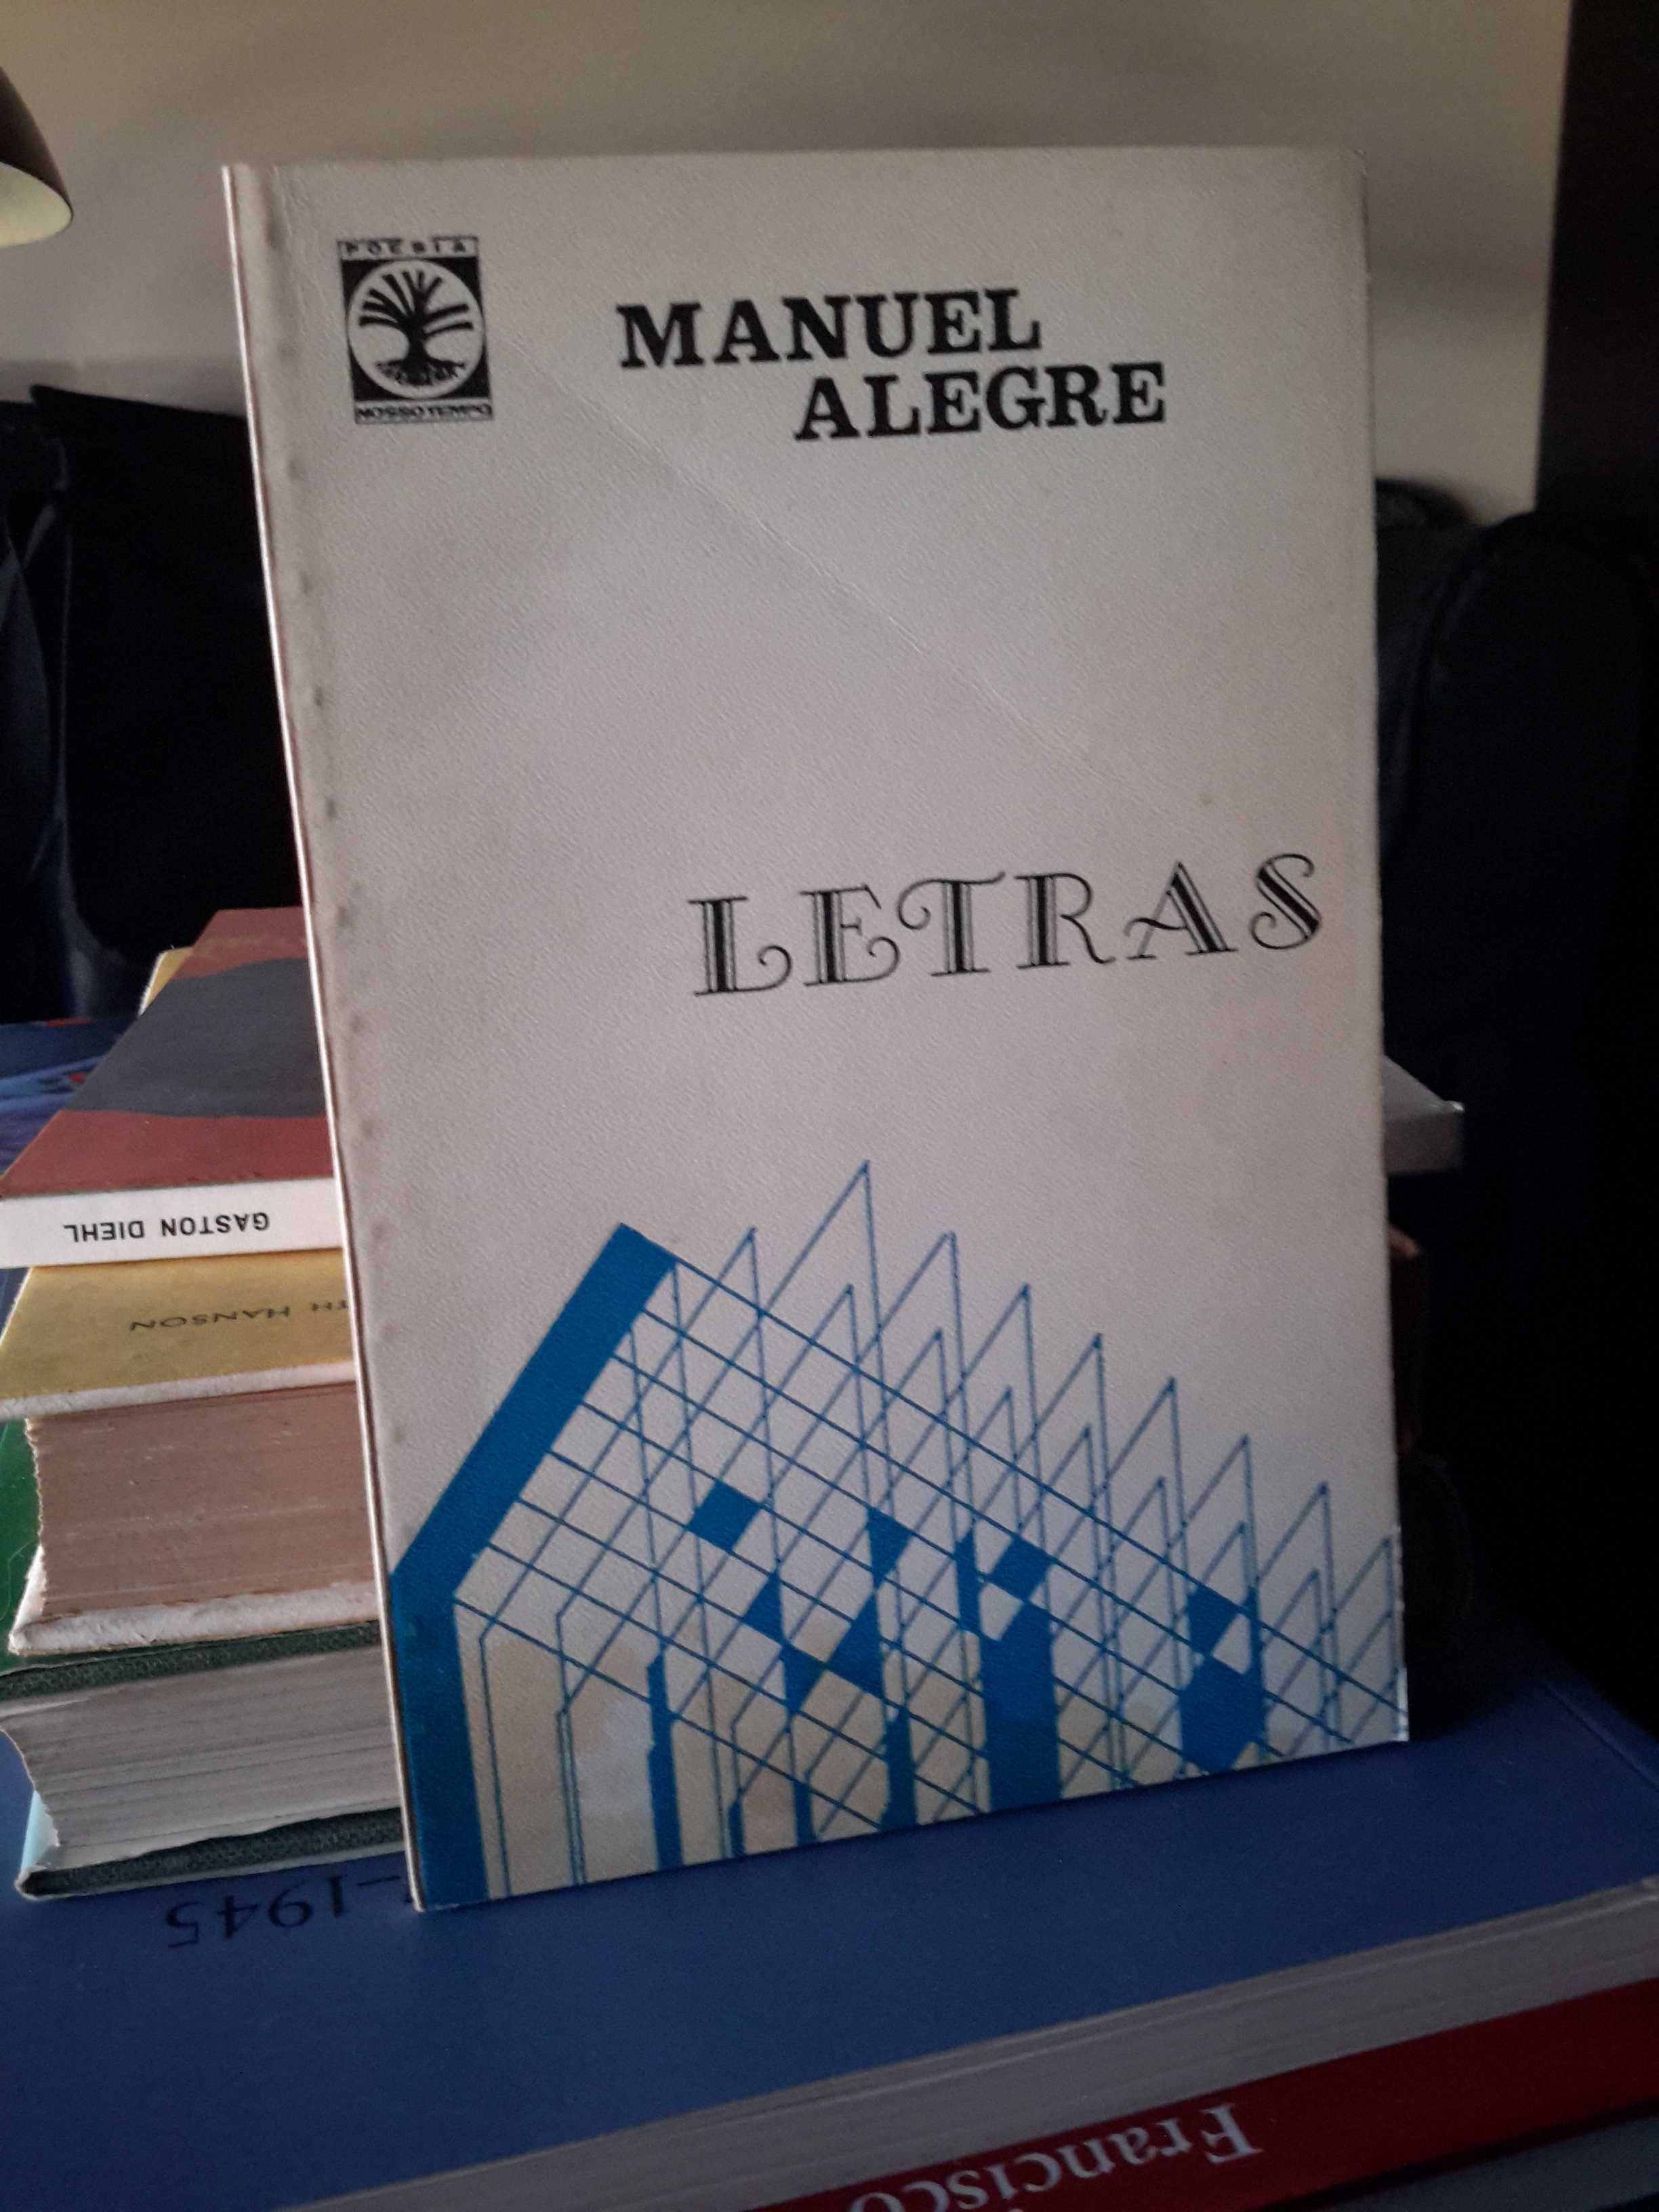 Manuel Alegre - Letras (1.ª edição, 1974)